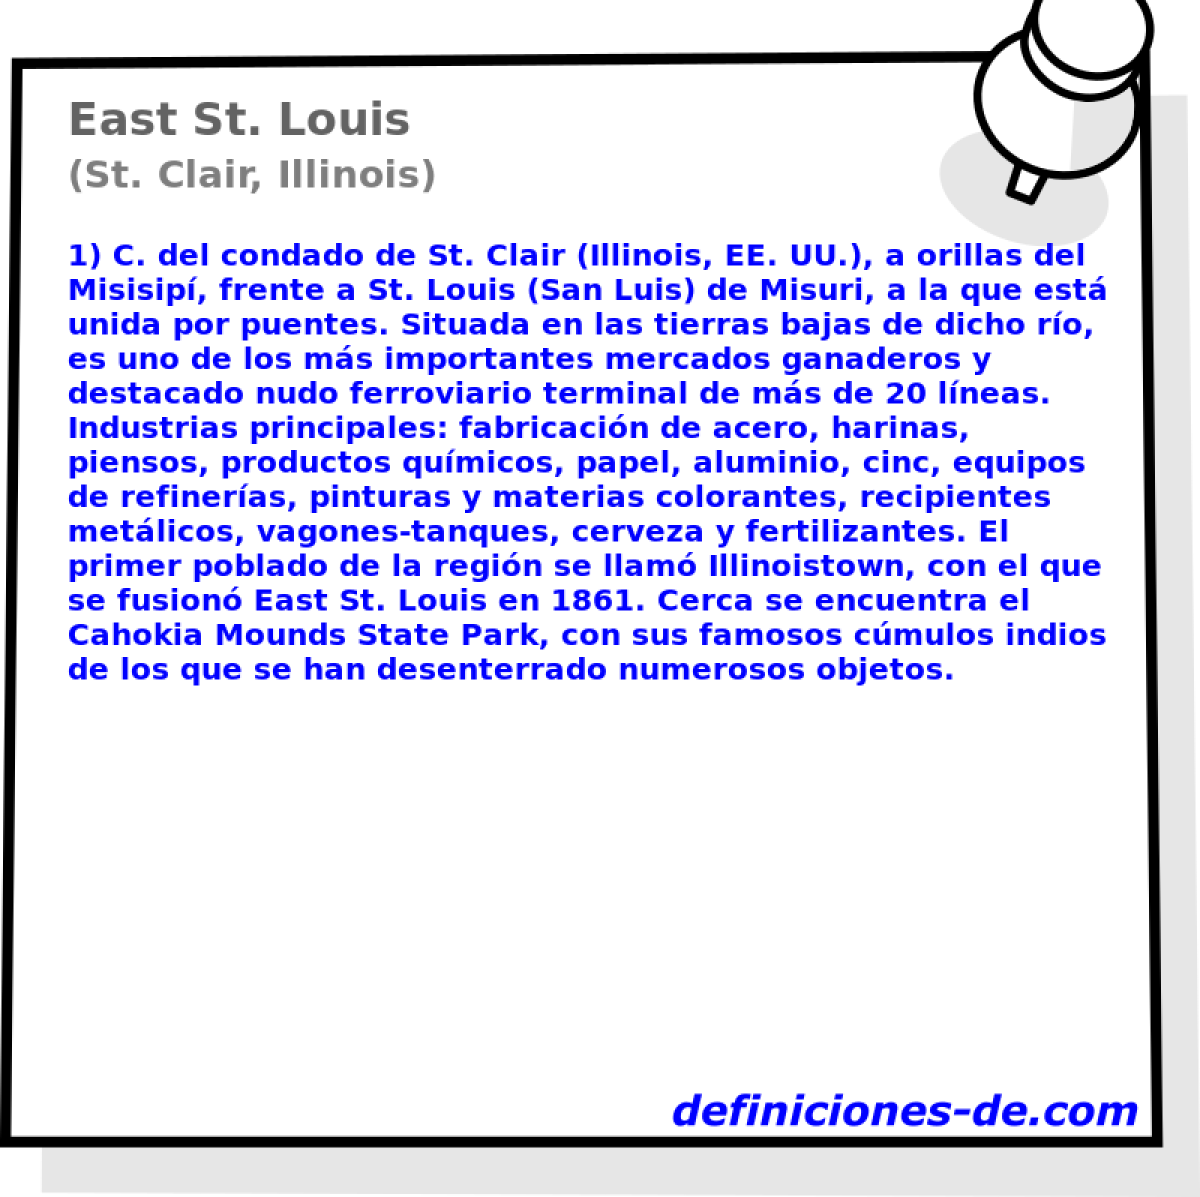 East St. Louis (St. Clair, Illinois)